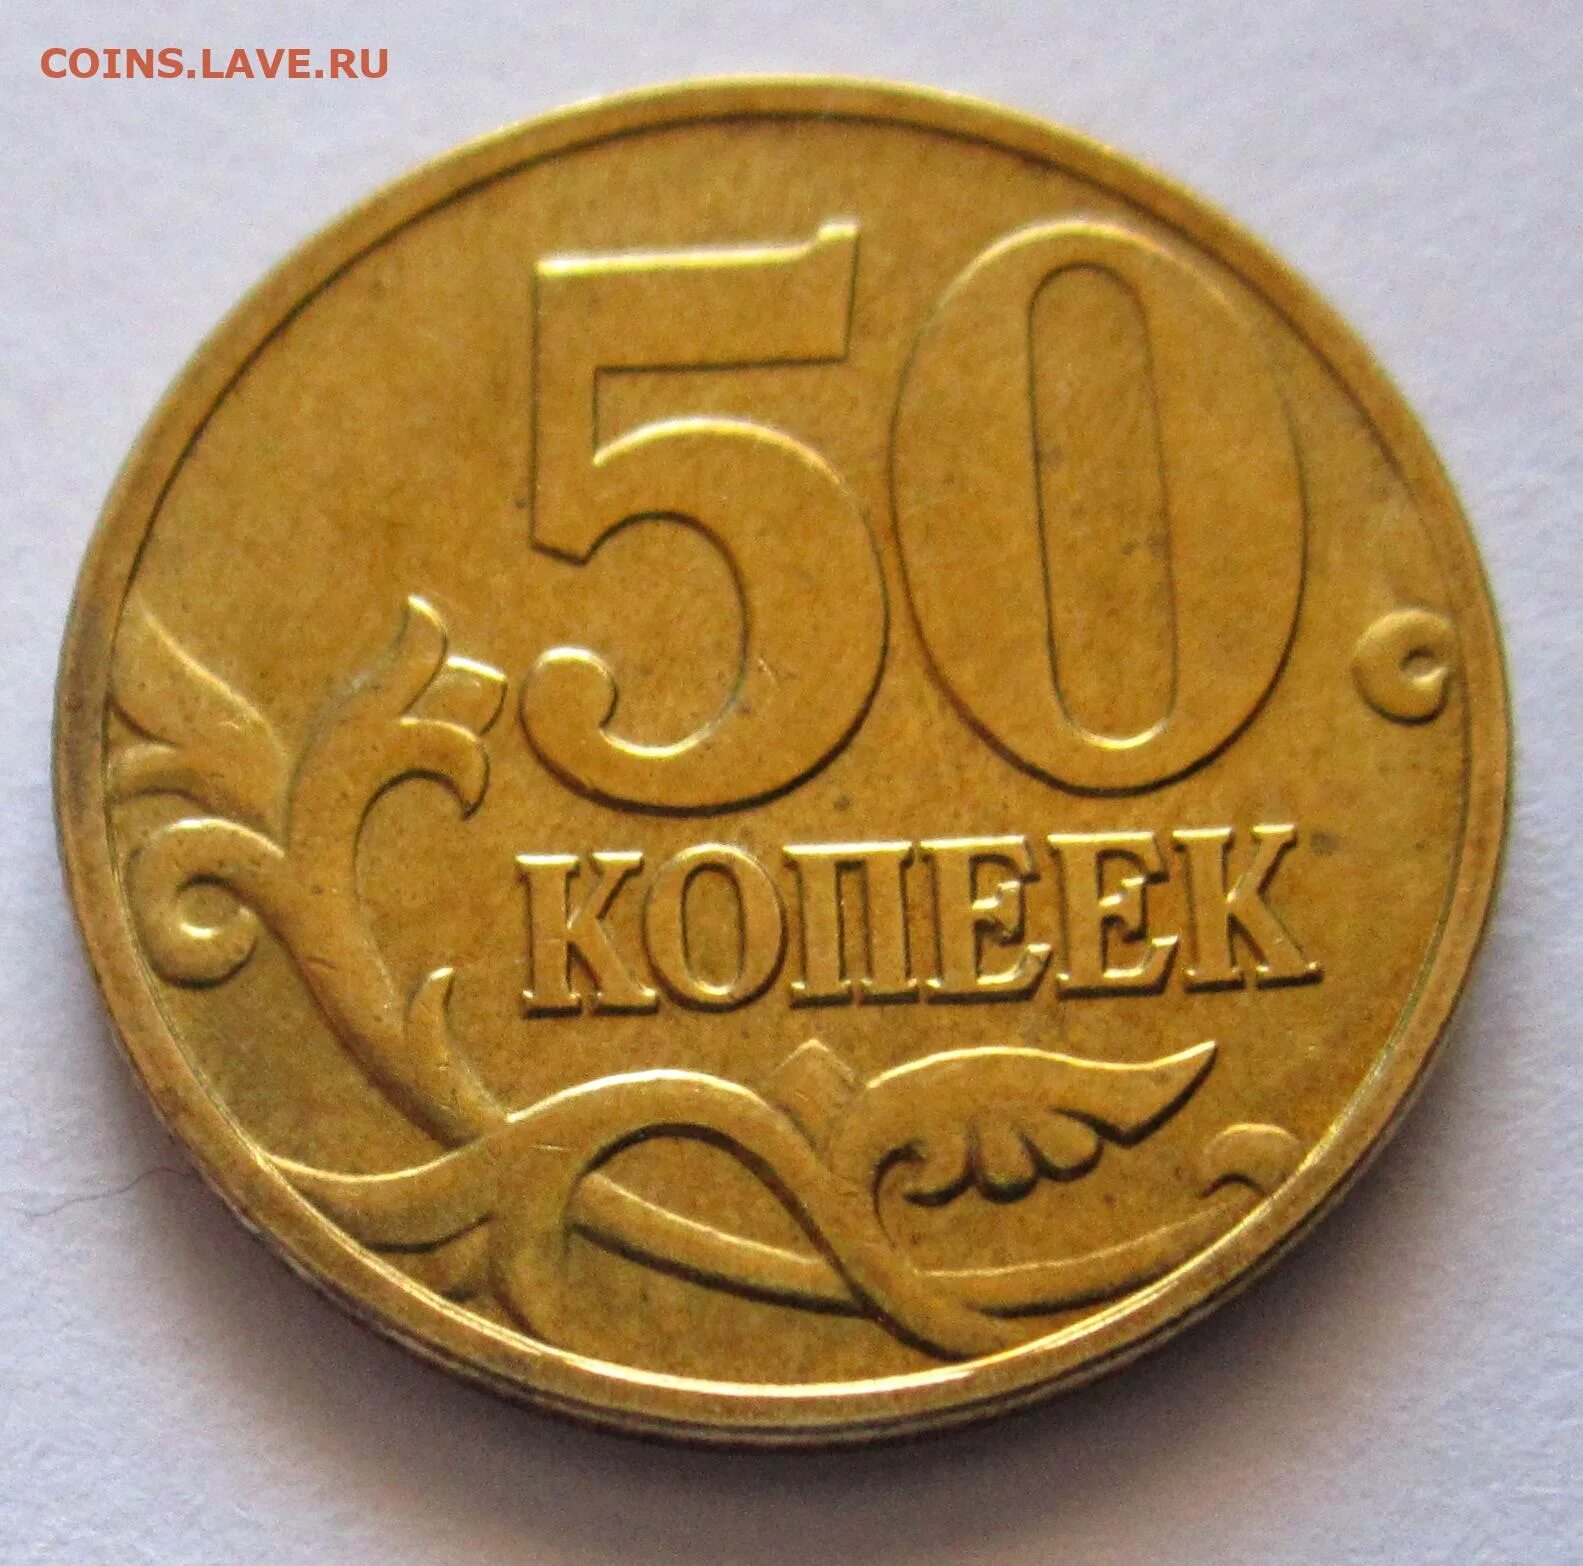 50 Копеек 2006 м (немагнитные). Латунные монеты. Монеты из латуни. Латунные монеты 10 копеек. 50 копеек 2008 года